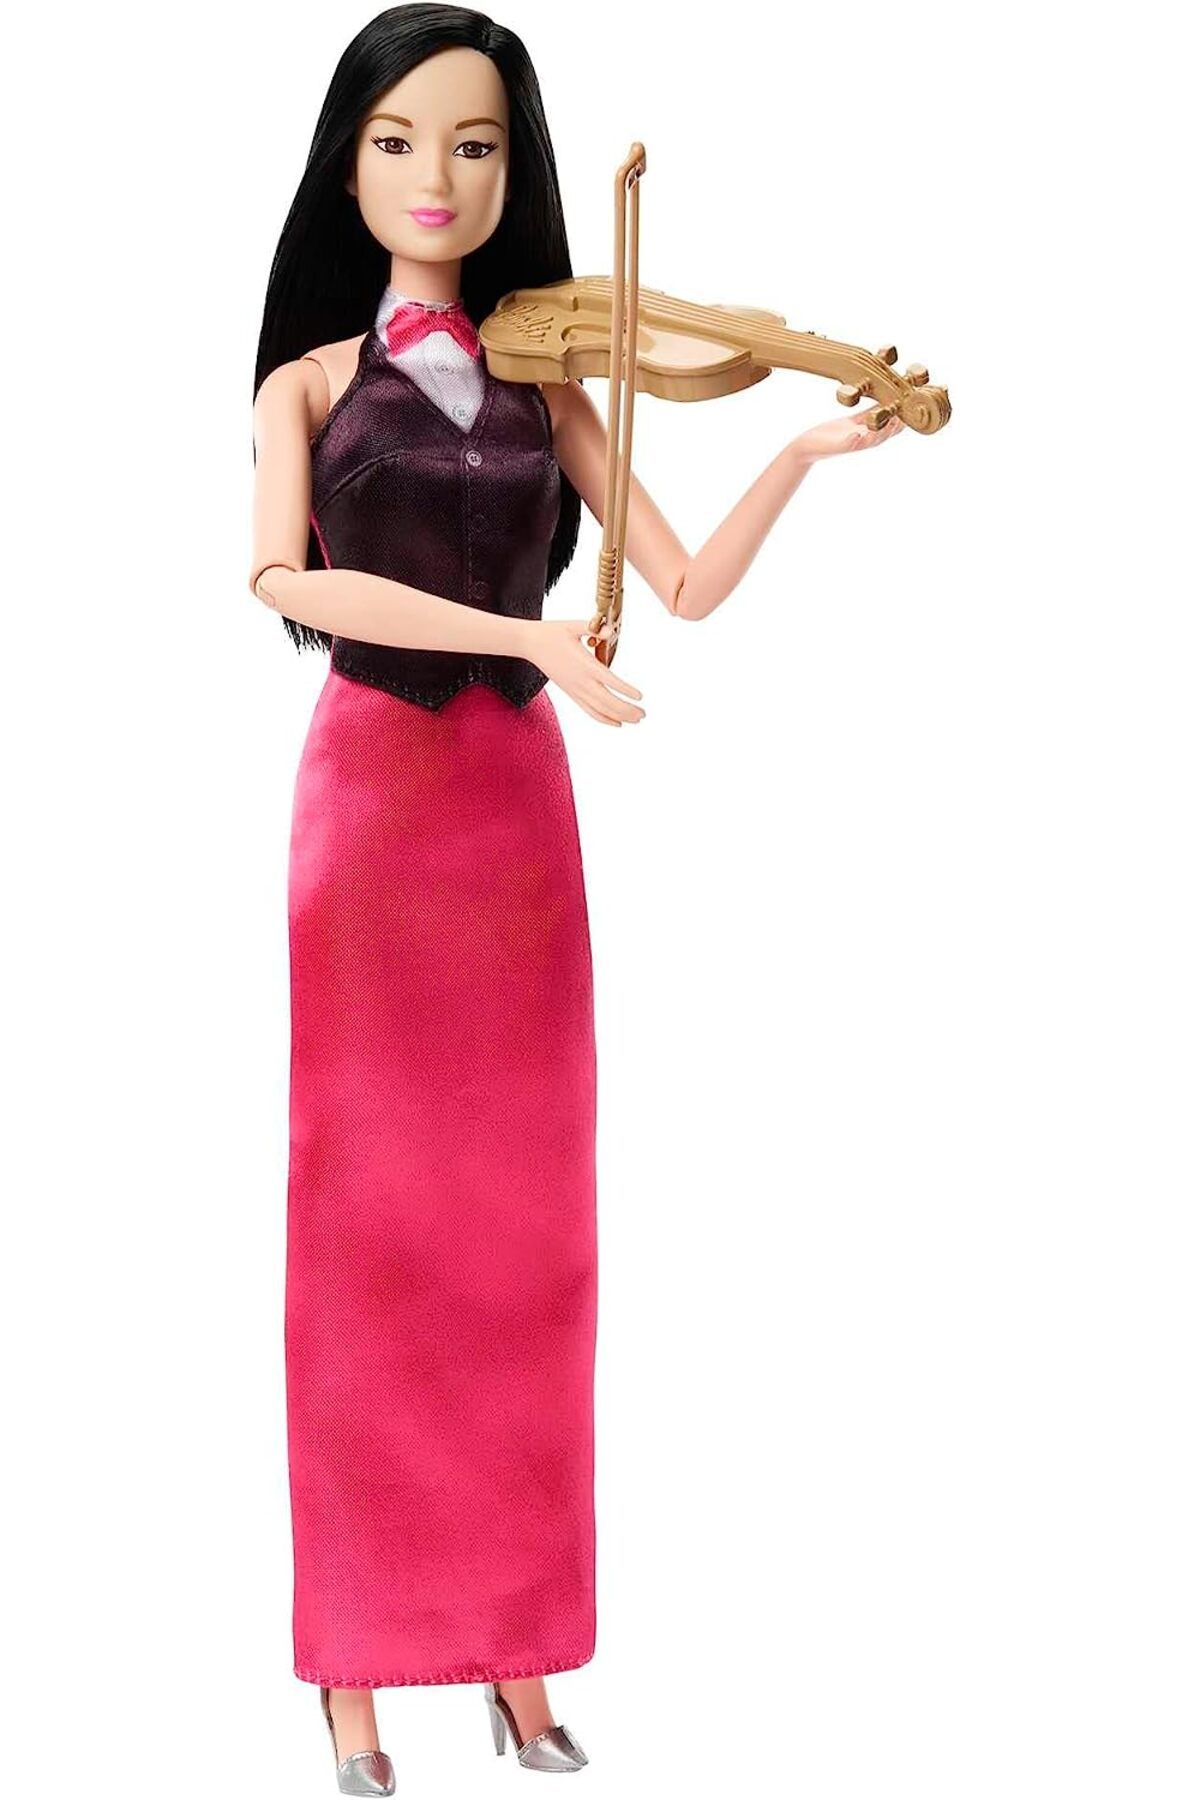 Barbie Kariyer Bebekleri Kemancı Müzisyen Hkt68